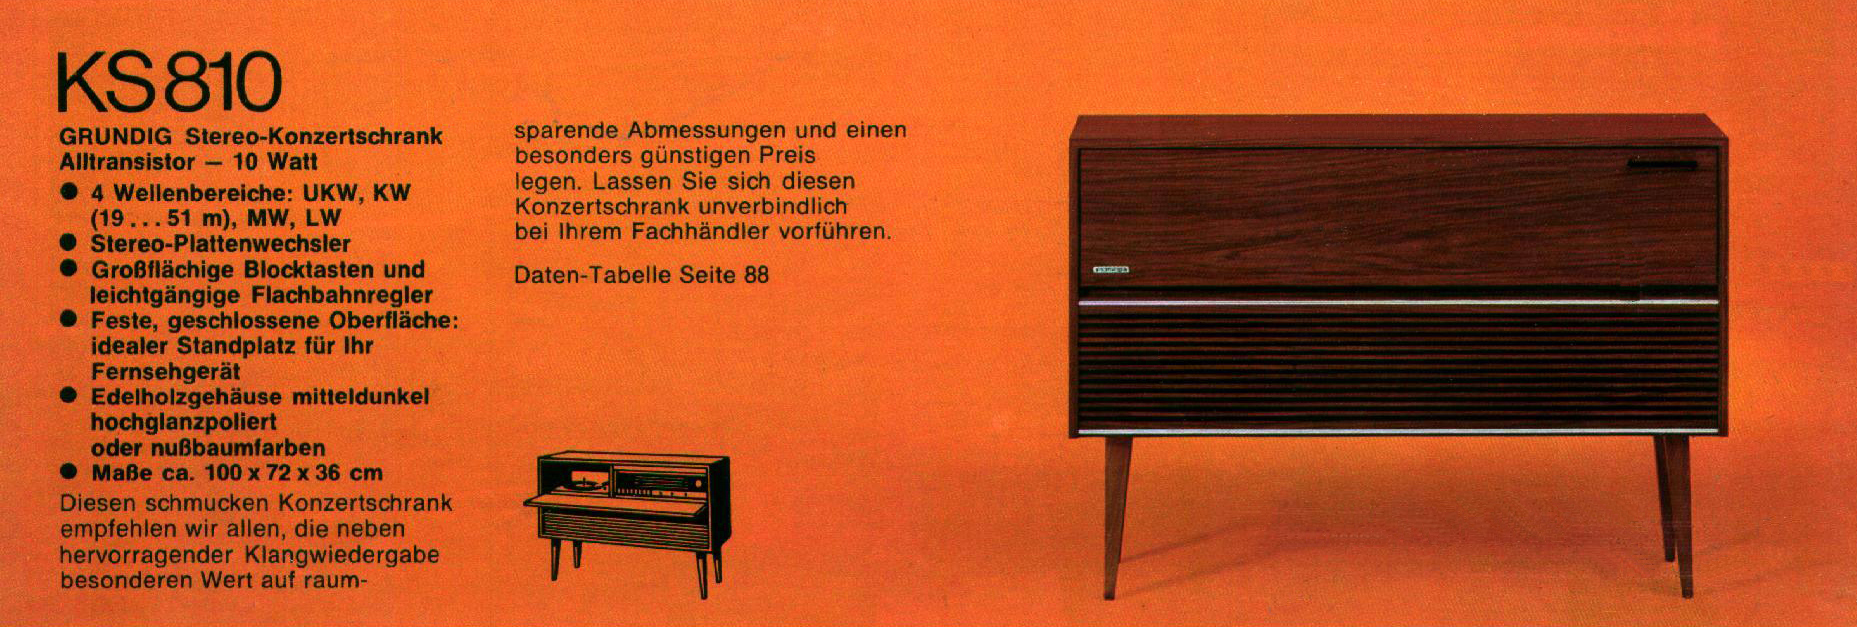 Grundig KS-810-Prospekt-1972.jpg